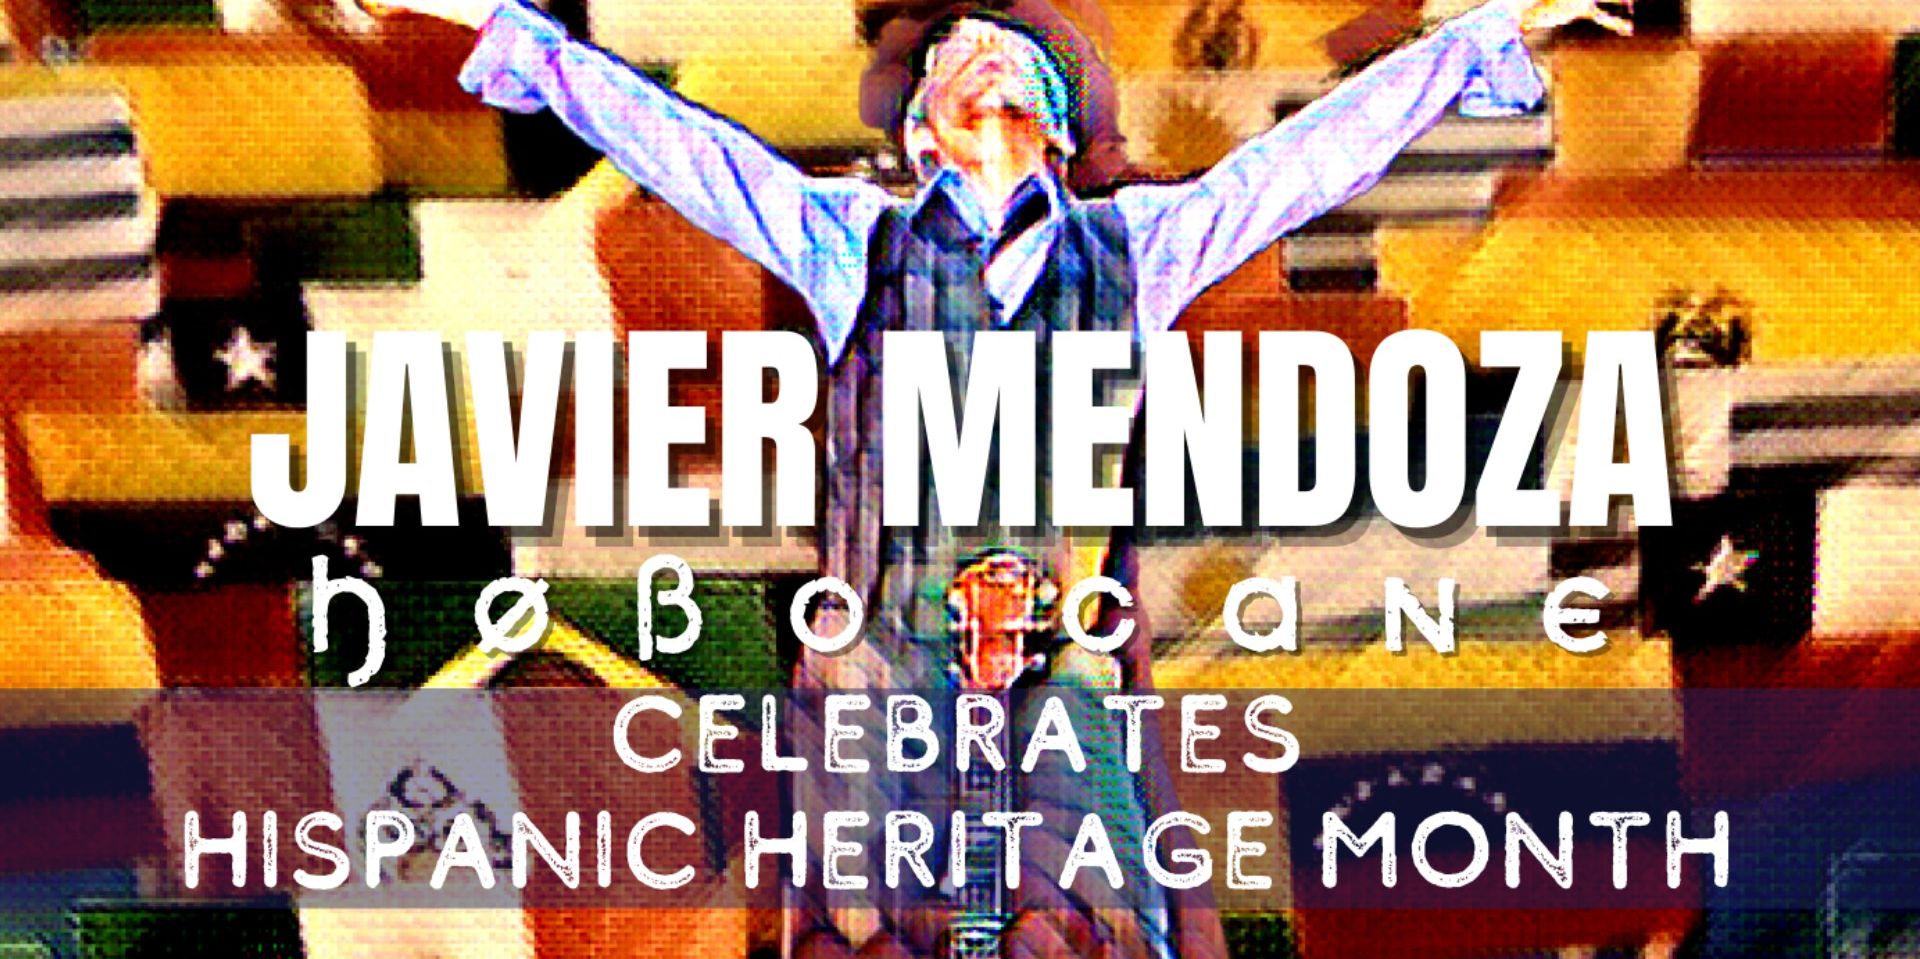 Javier Mendoza (Hobo Cane) Celebrates Hispanic Heritage Month promotional image